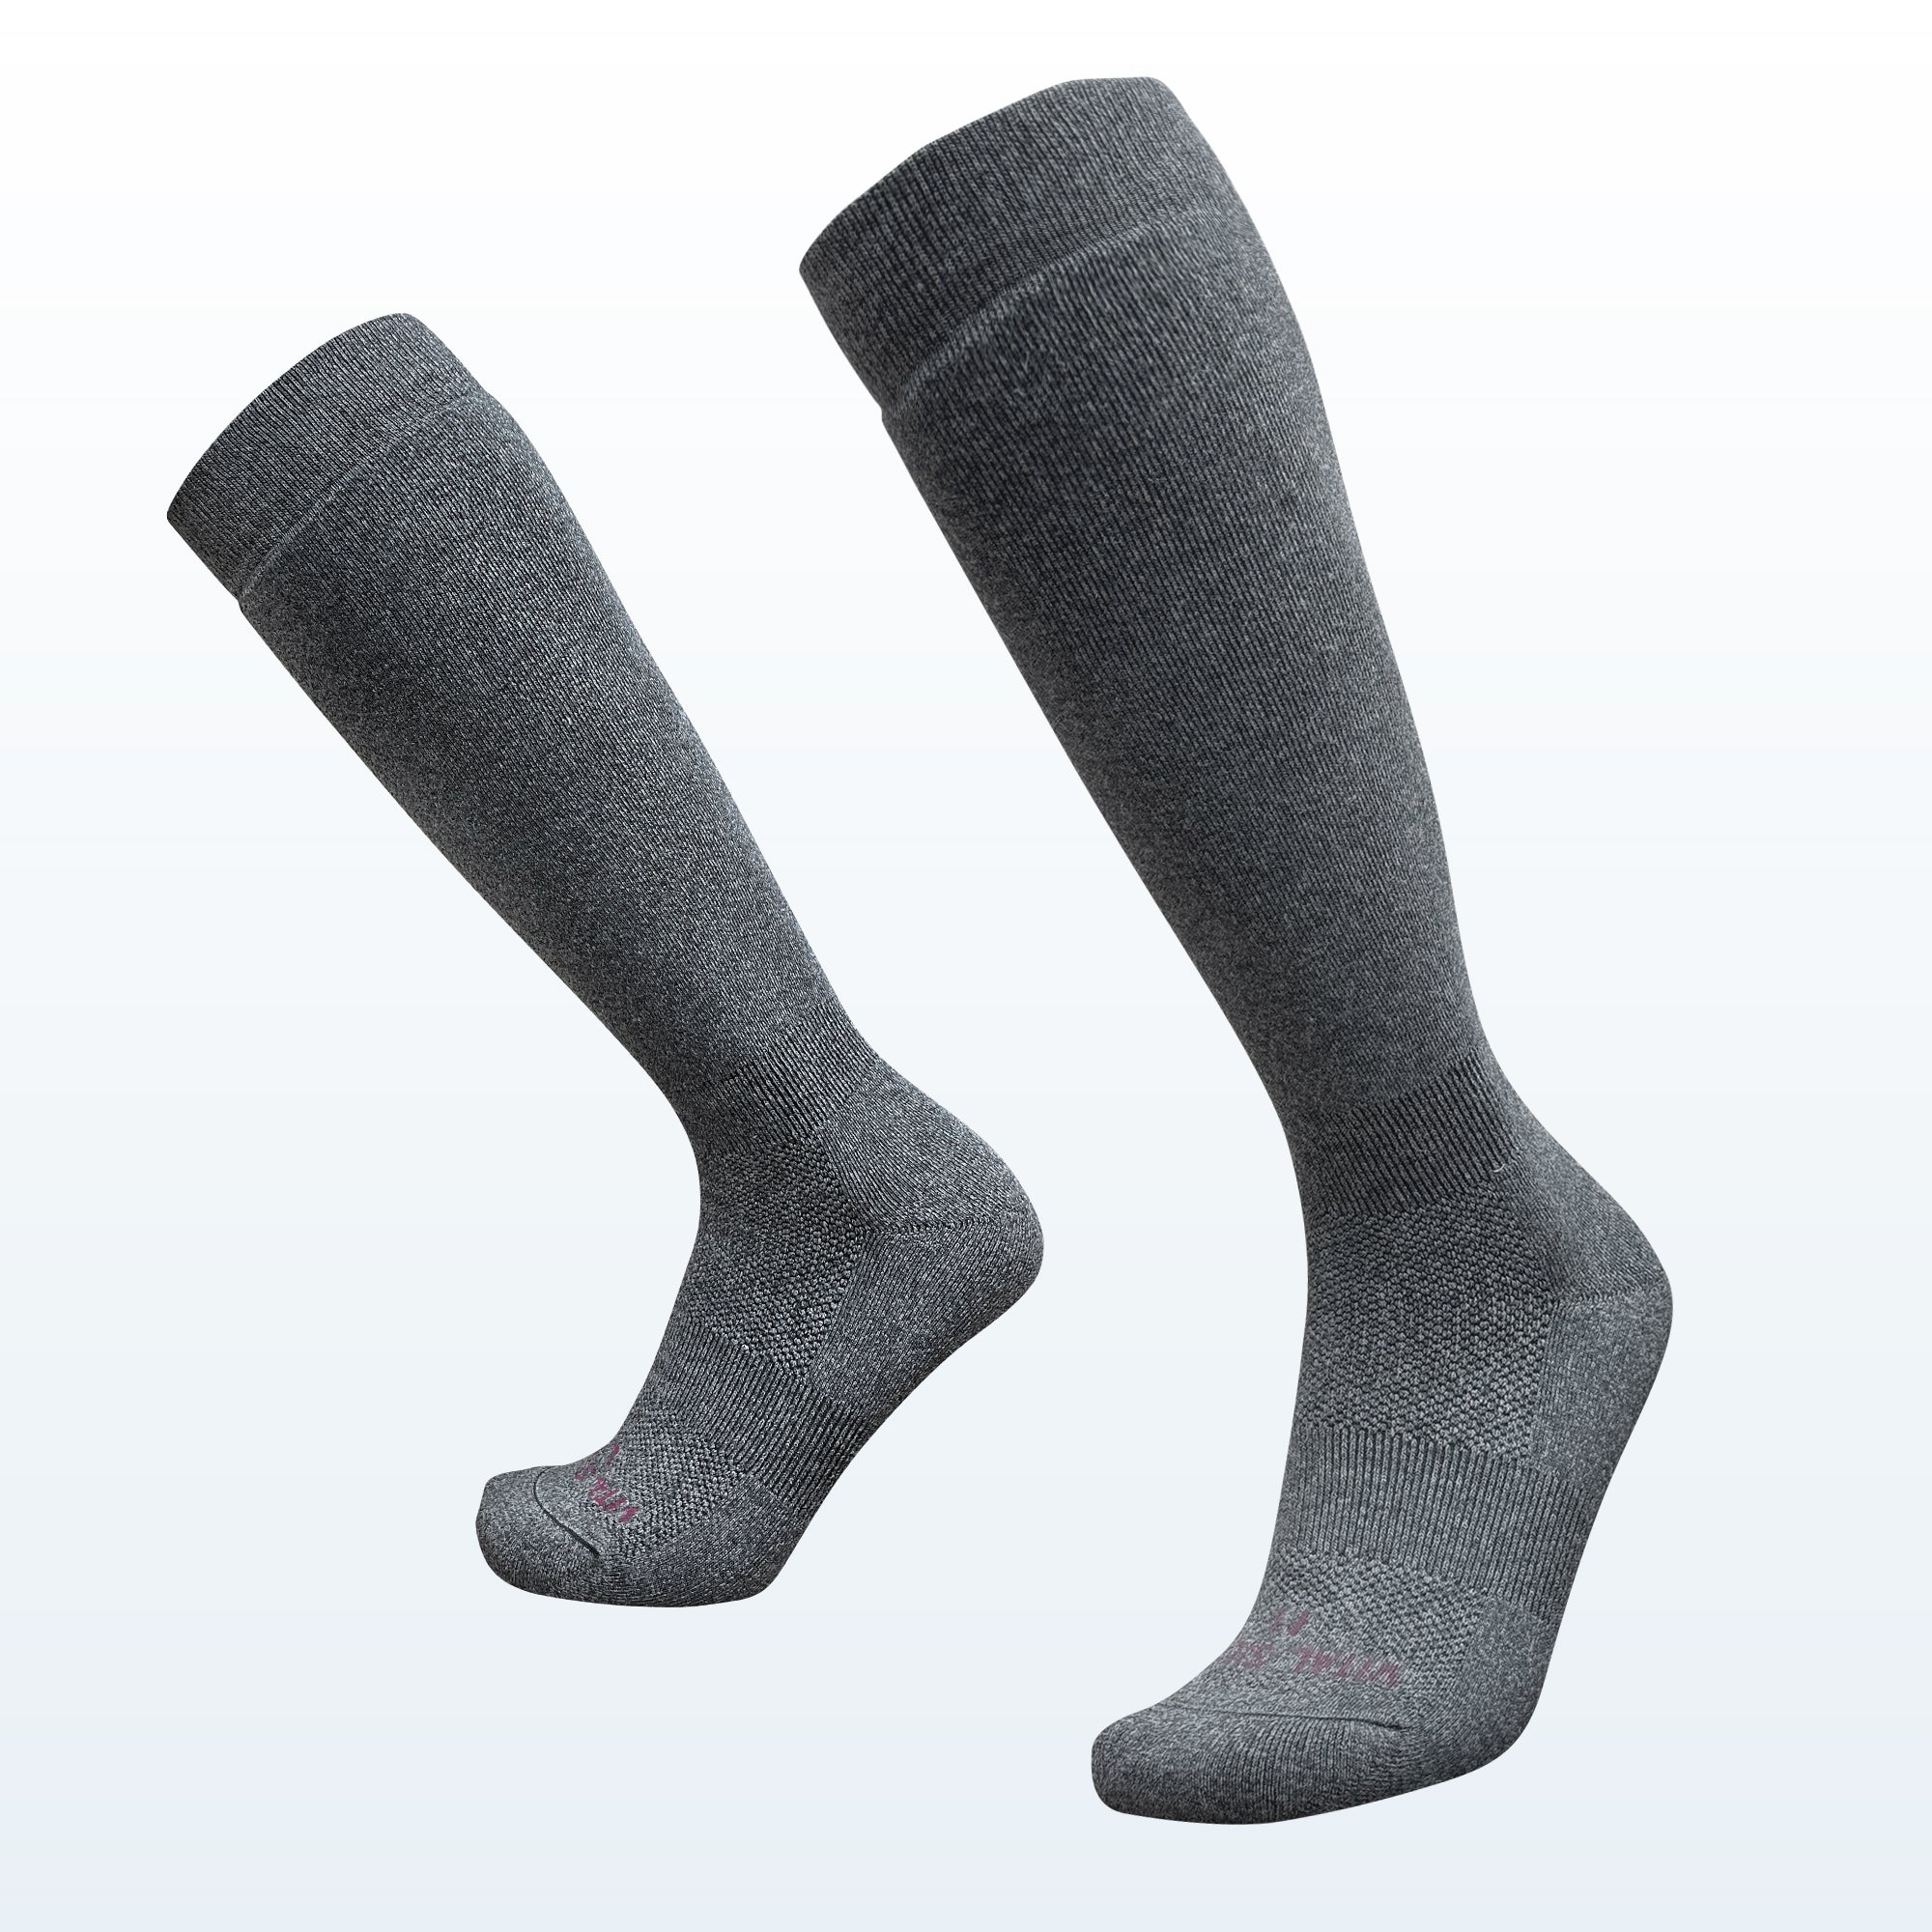 Merino Wool Hiking Socks - Vital Salveo